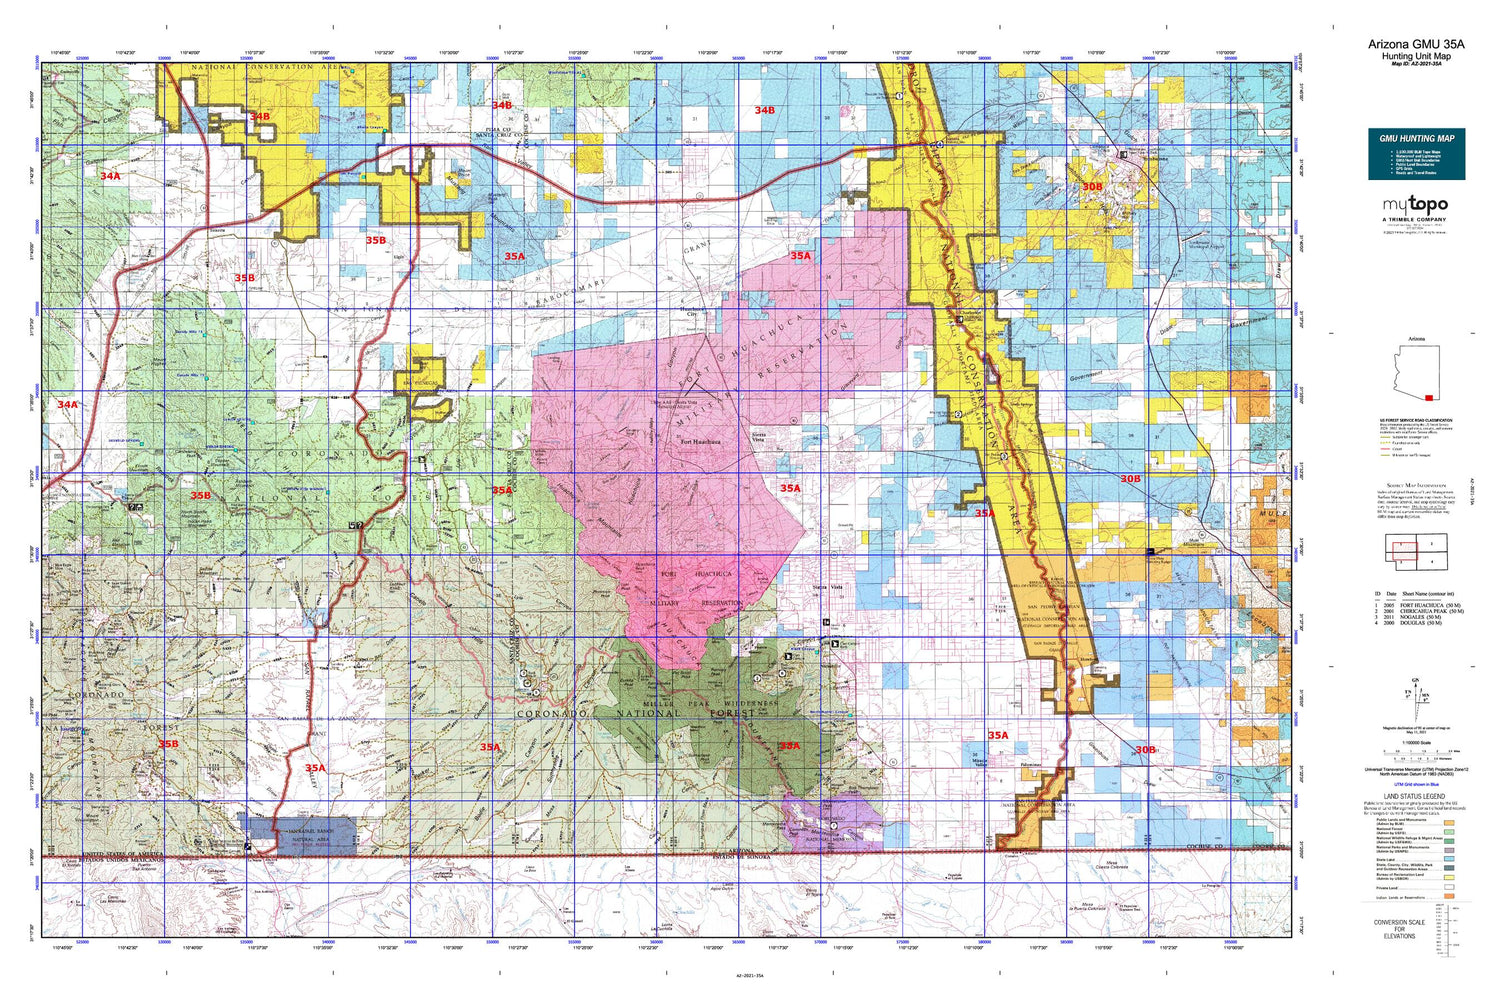 Arizona GMU 35A Map Image